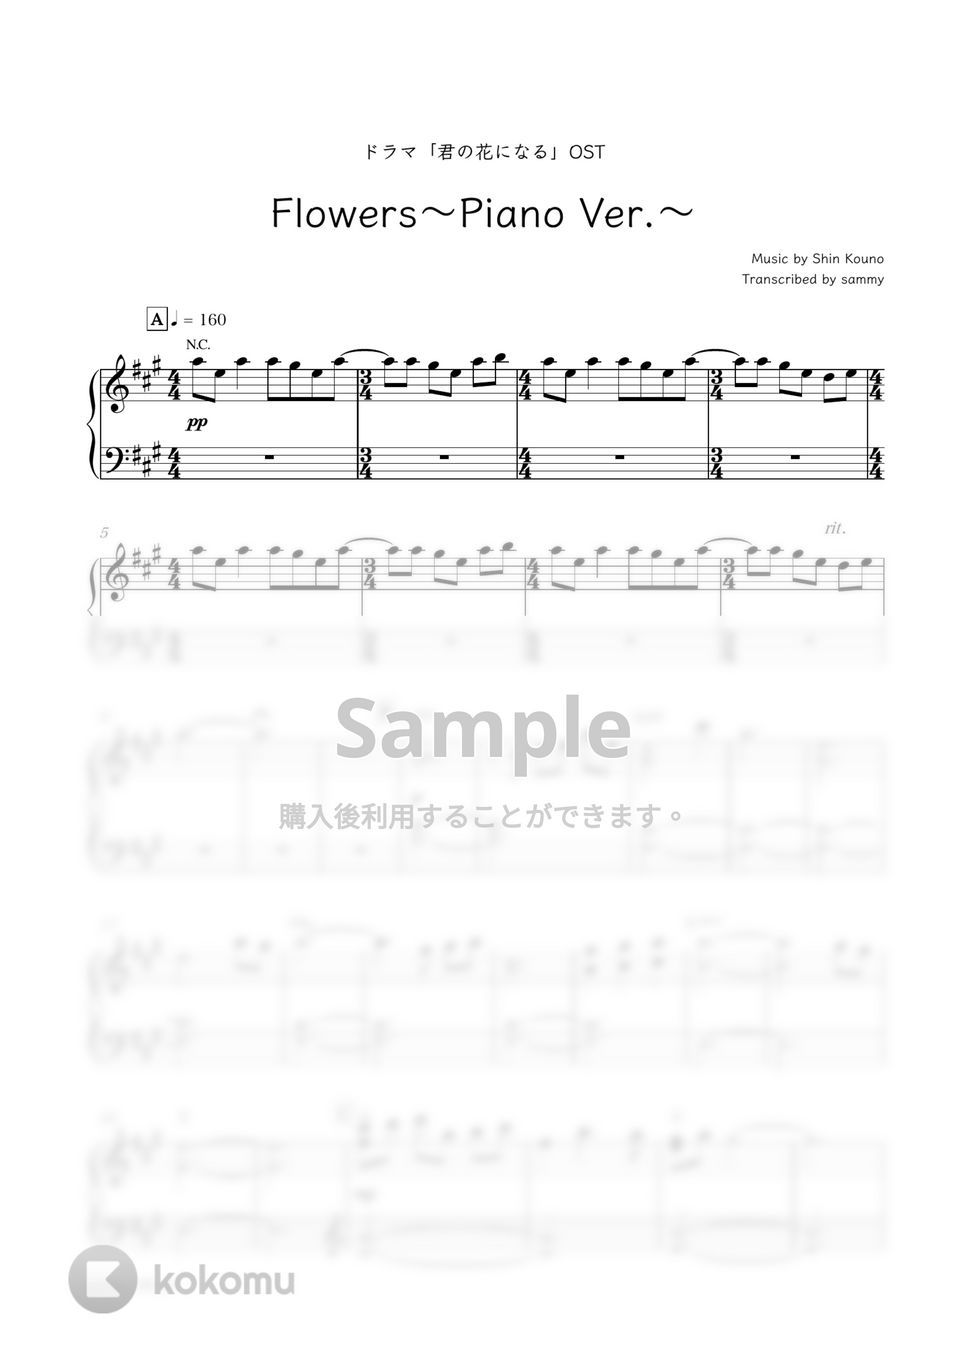 ドラマ『君の花になる』OST - Flowers〜Piano Ver.〜 by sammy